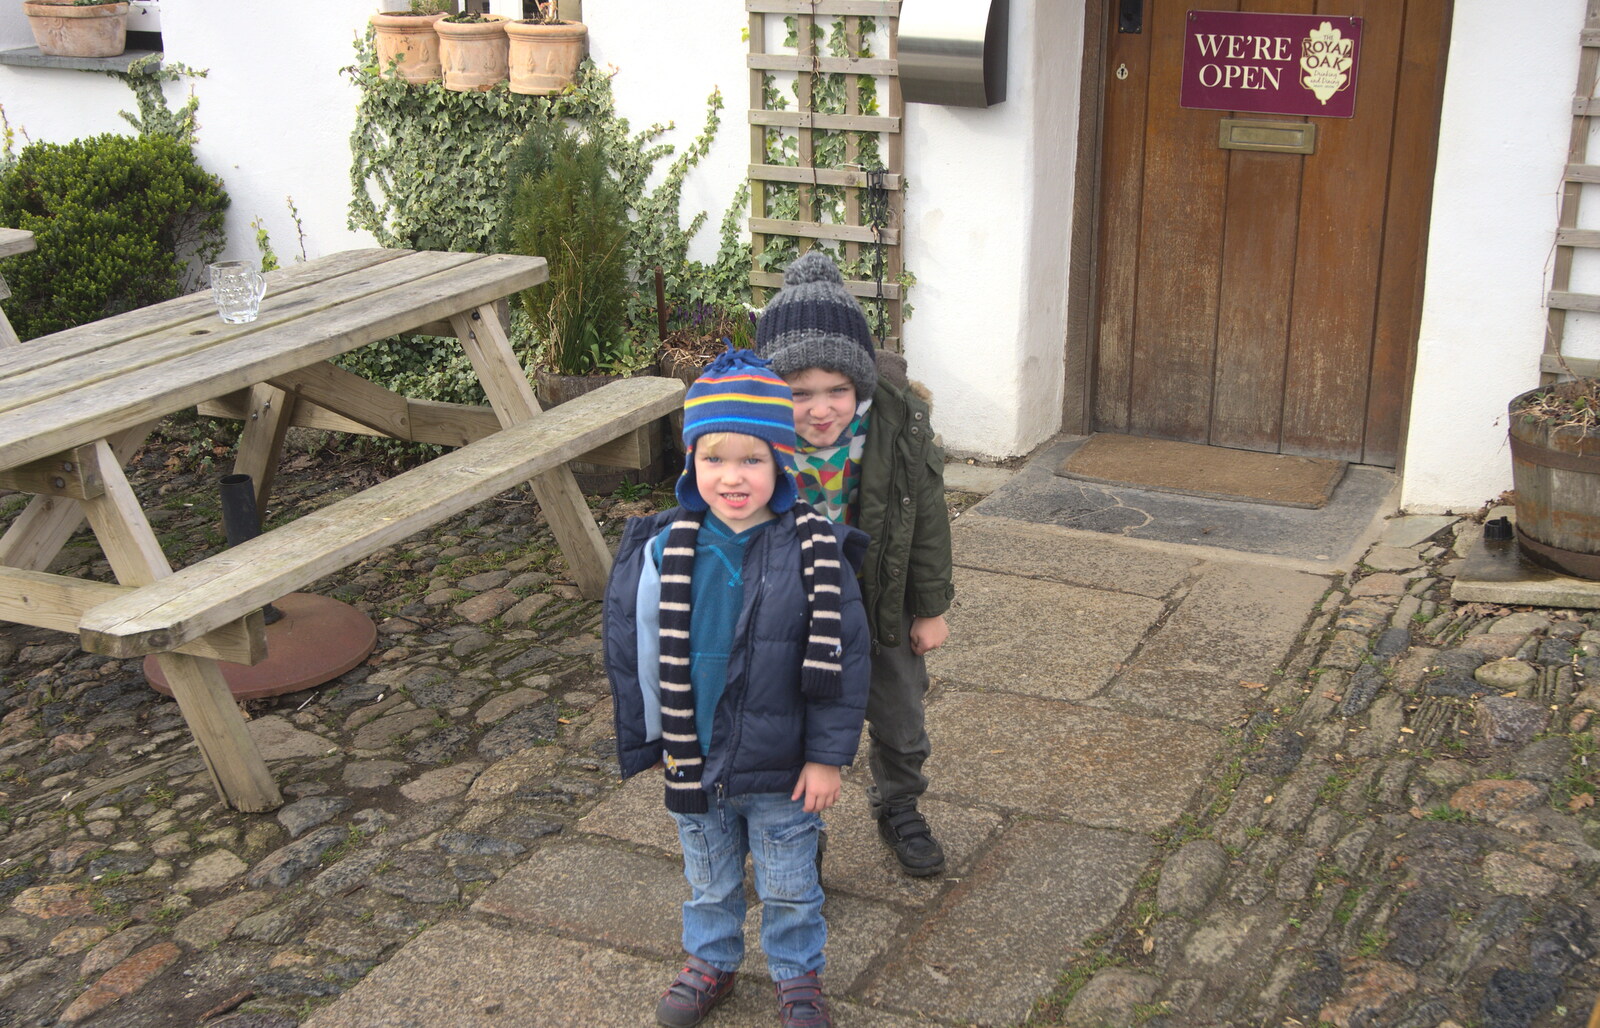 The boys do some poses from A Trip to Grandma J's, Spreyton, Devon - 18th February 2015